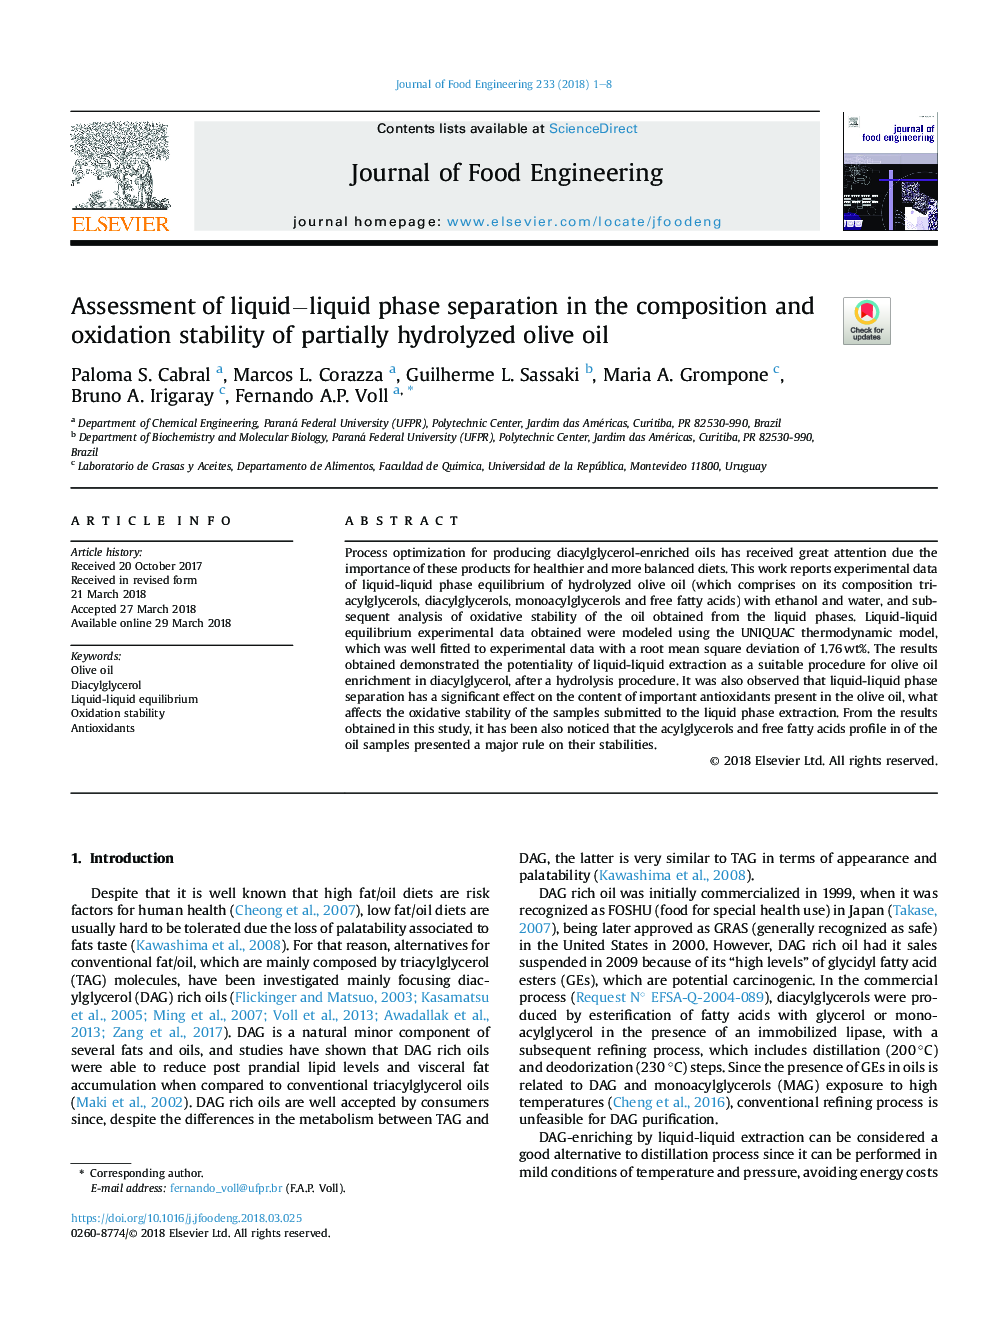 Assessment of liquidâliquid phase separation in the composition and oxidation stability of partially hydrolyzed olive oil